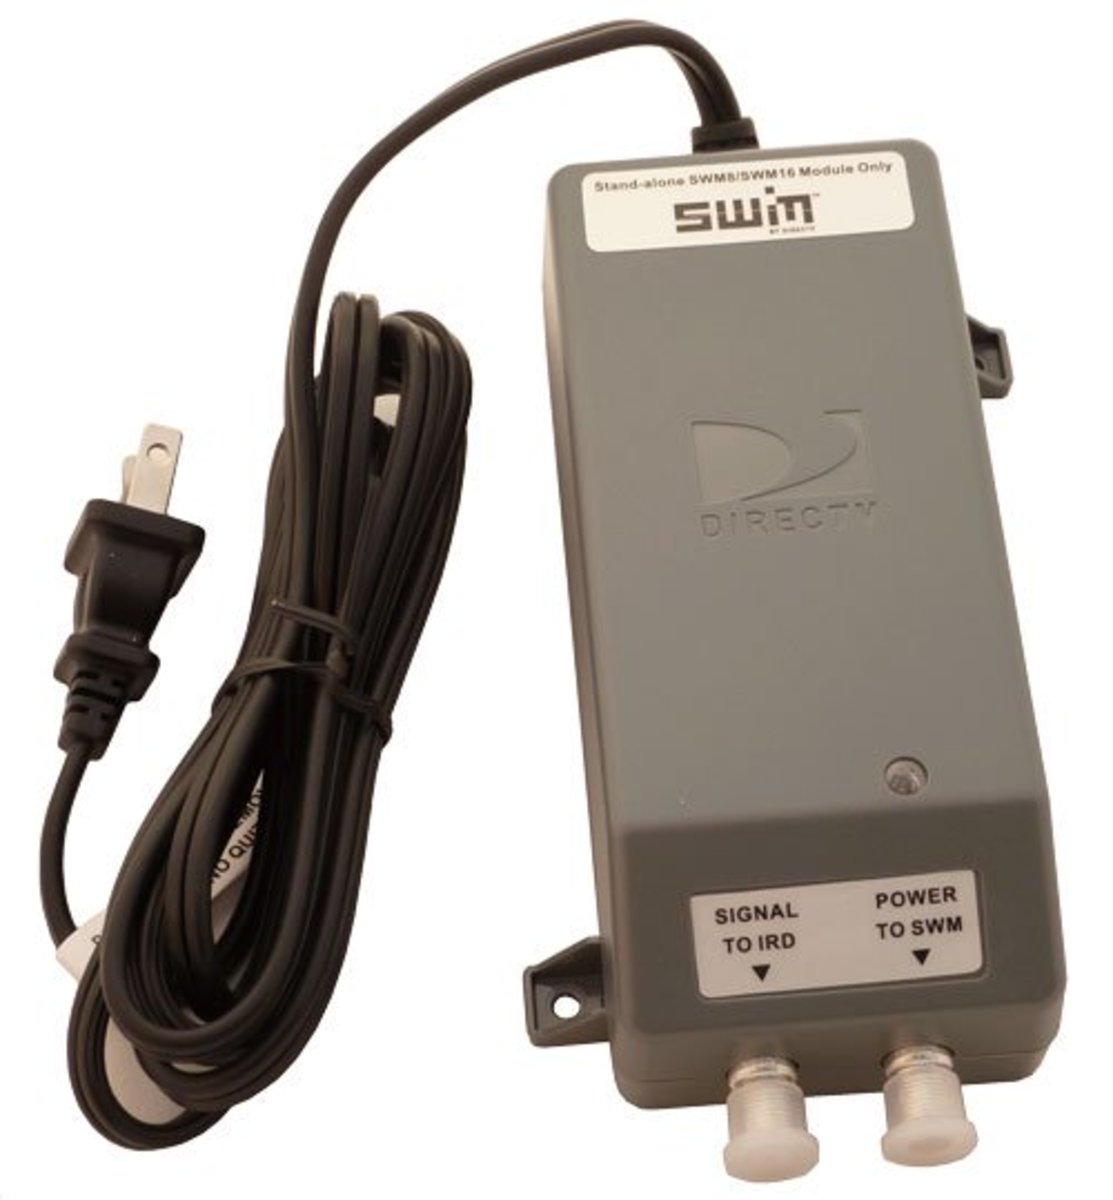 SWiM Power Inserter for DirecTV